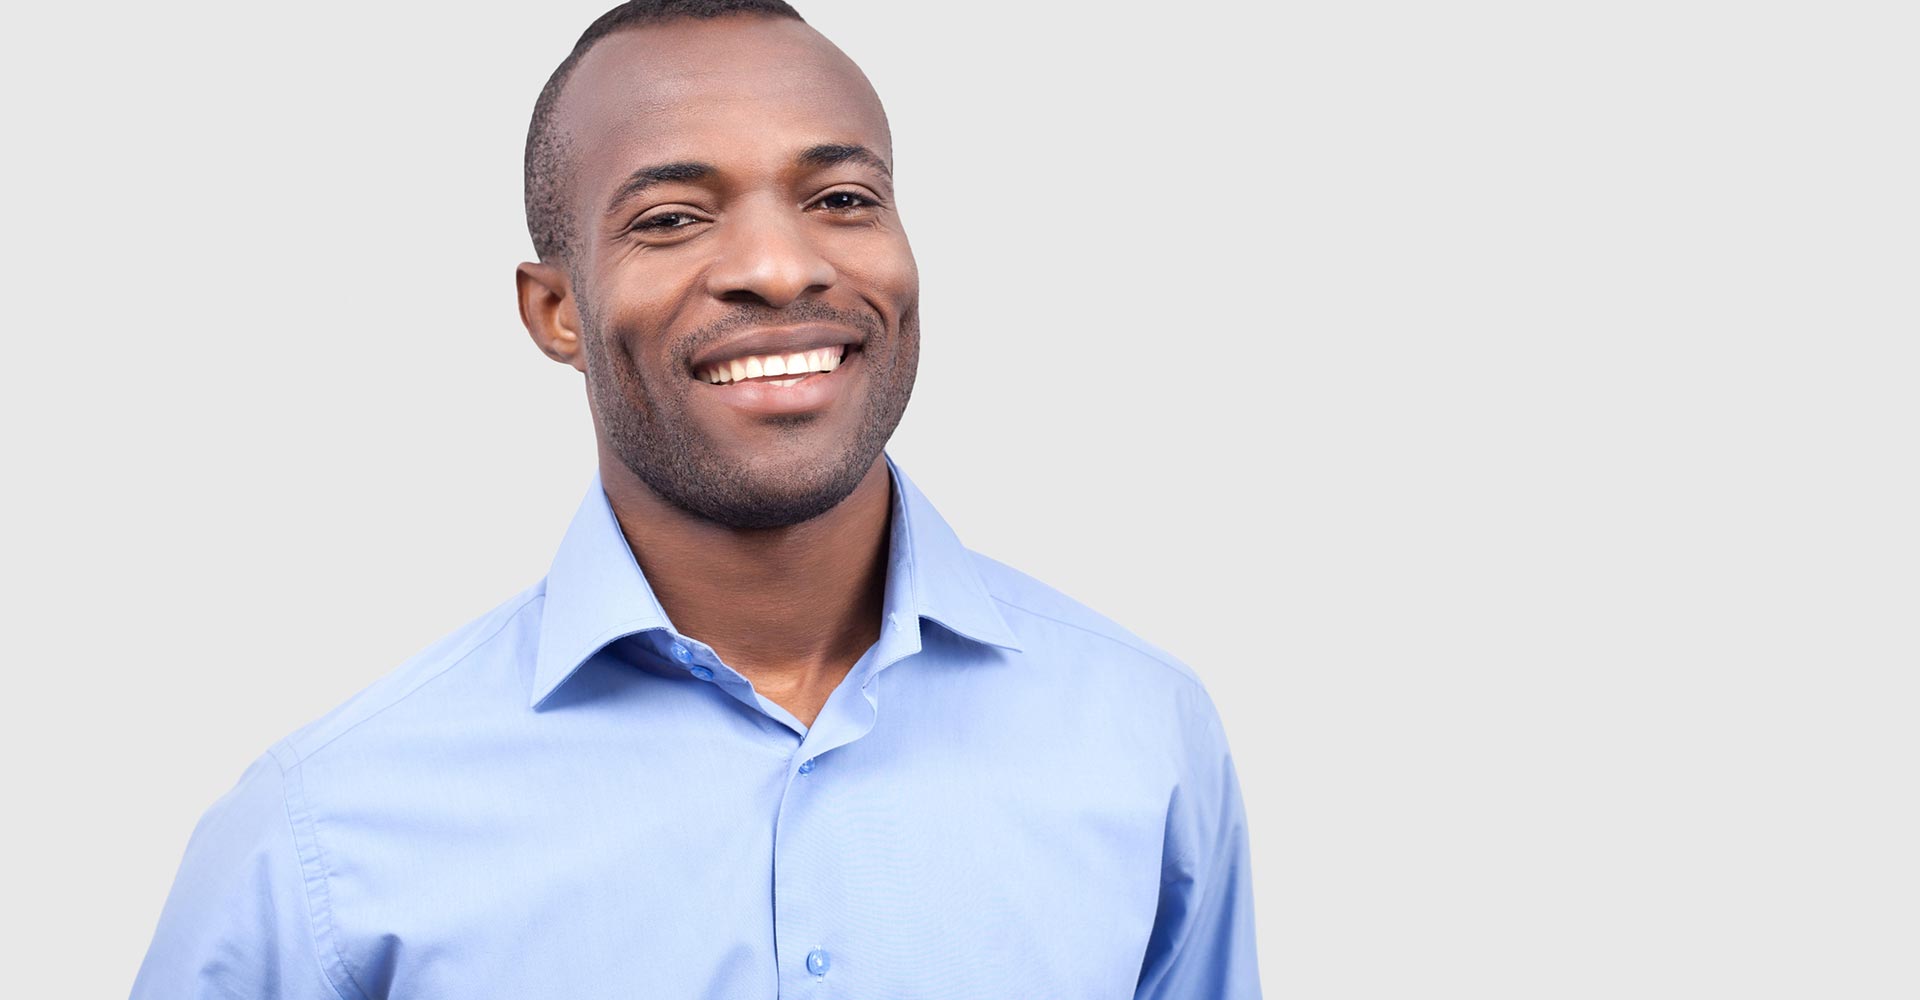 Young black man smiling at camera